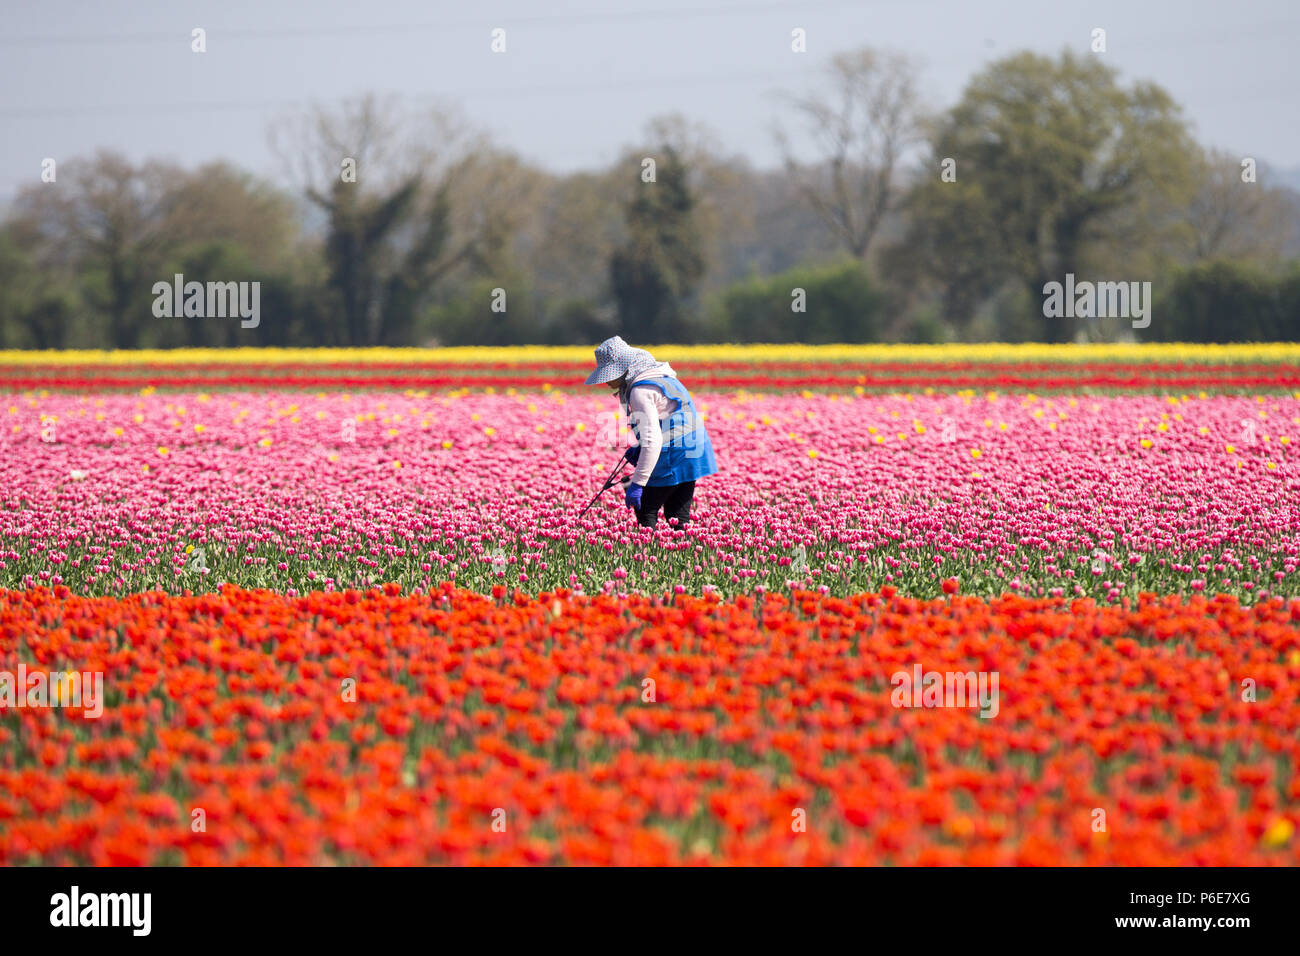 Imprenditore lavoratore di lavorare in un campo di tulipani vicino a King's Lynn nel Norfolk venerdì 20 aprile dopo che le piante fiorite negli ultimi giorni a causa del caldo. I tulipani in Gran Bretagna da ultimo i campi di bulbi hanno scoppiò in fiore oggi (VEN) a seguito della recente ondata di caldo. I fiori hanno aperto per tutta la notte dopo la Gran Bretagna goduto il più caldo aprile giornata per quasi 70 anni di ieri - con temperature di colpire 29.1C a Londra. Le splendide fioriture sono ora dando un display di abbagliamento di colore a conduzione familiare Belmont vivai vicino a King's Lynn nel Norfolk. Foto Stock